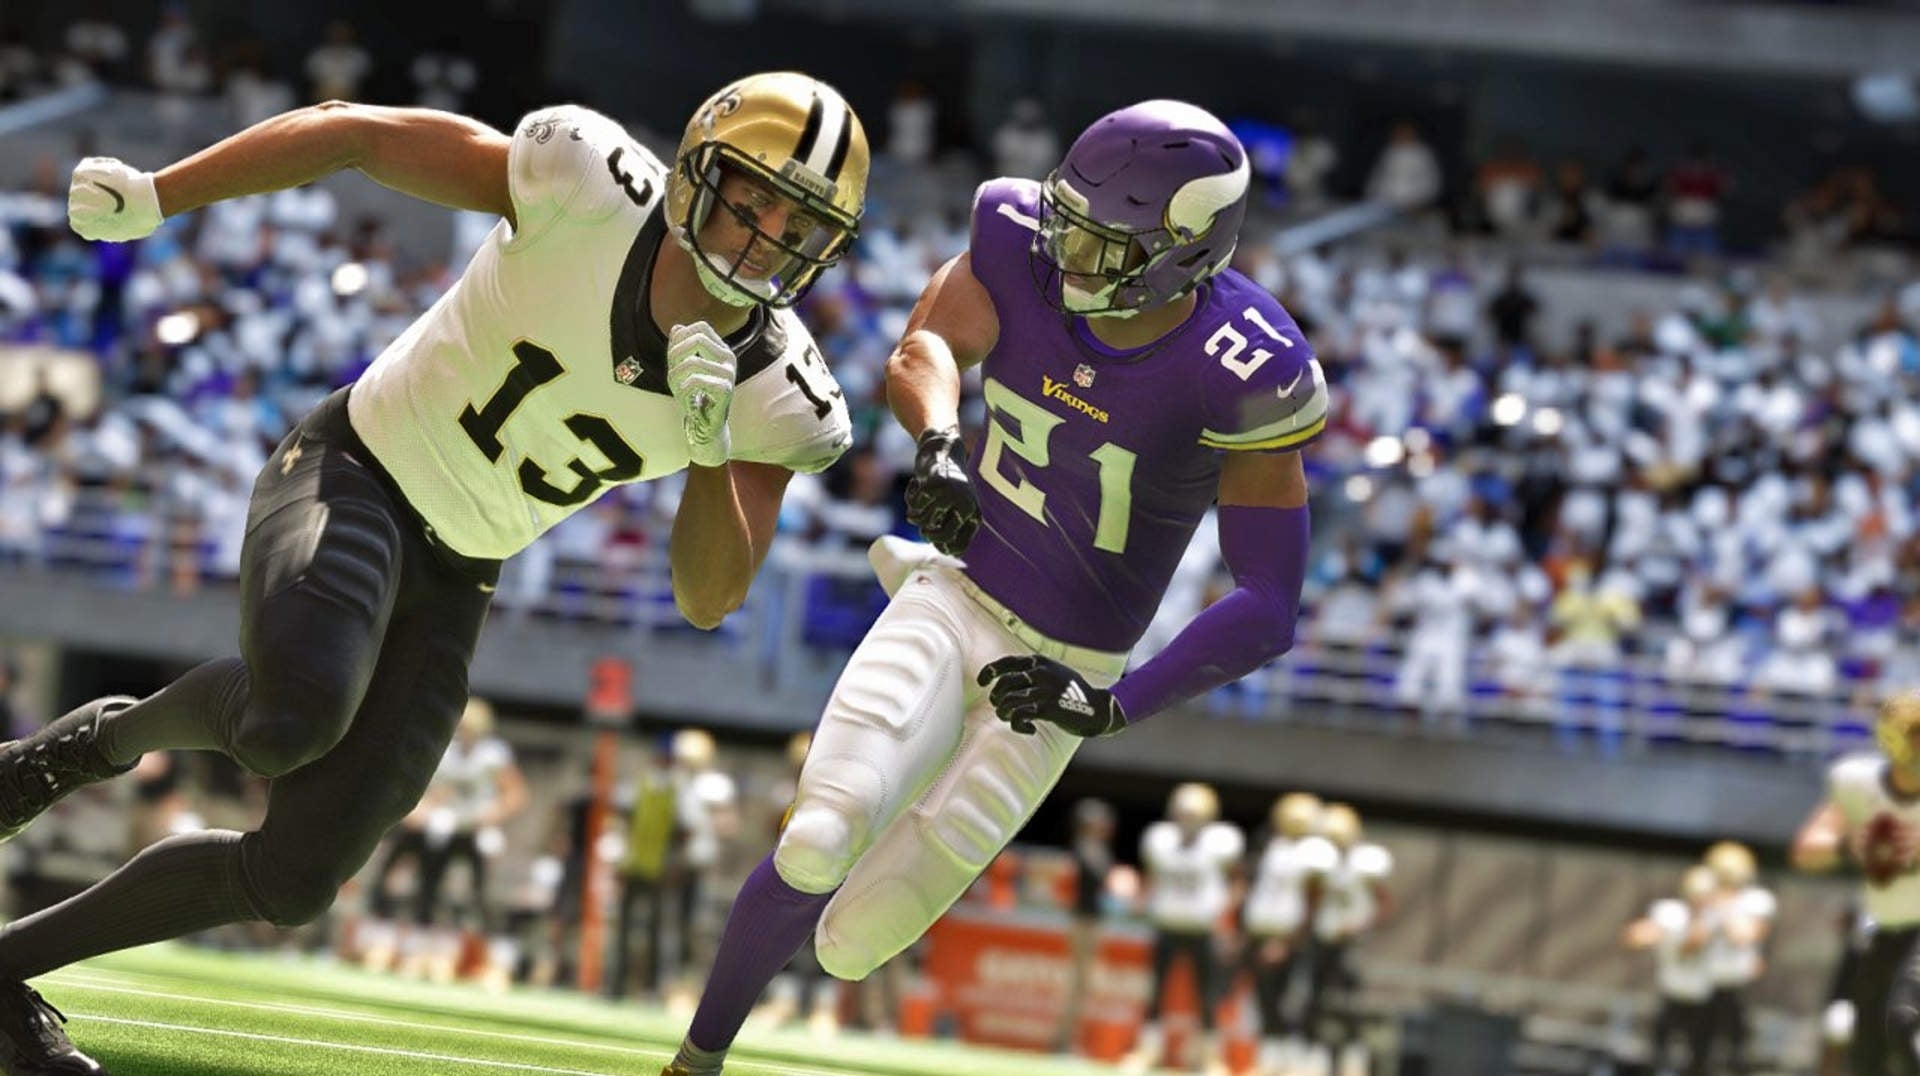 Imagen para Ventas USA: Madden NFL 21 fue el juego más vendido de agosto